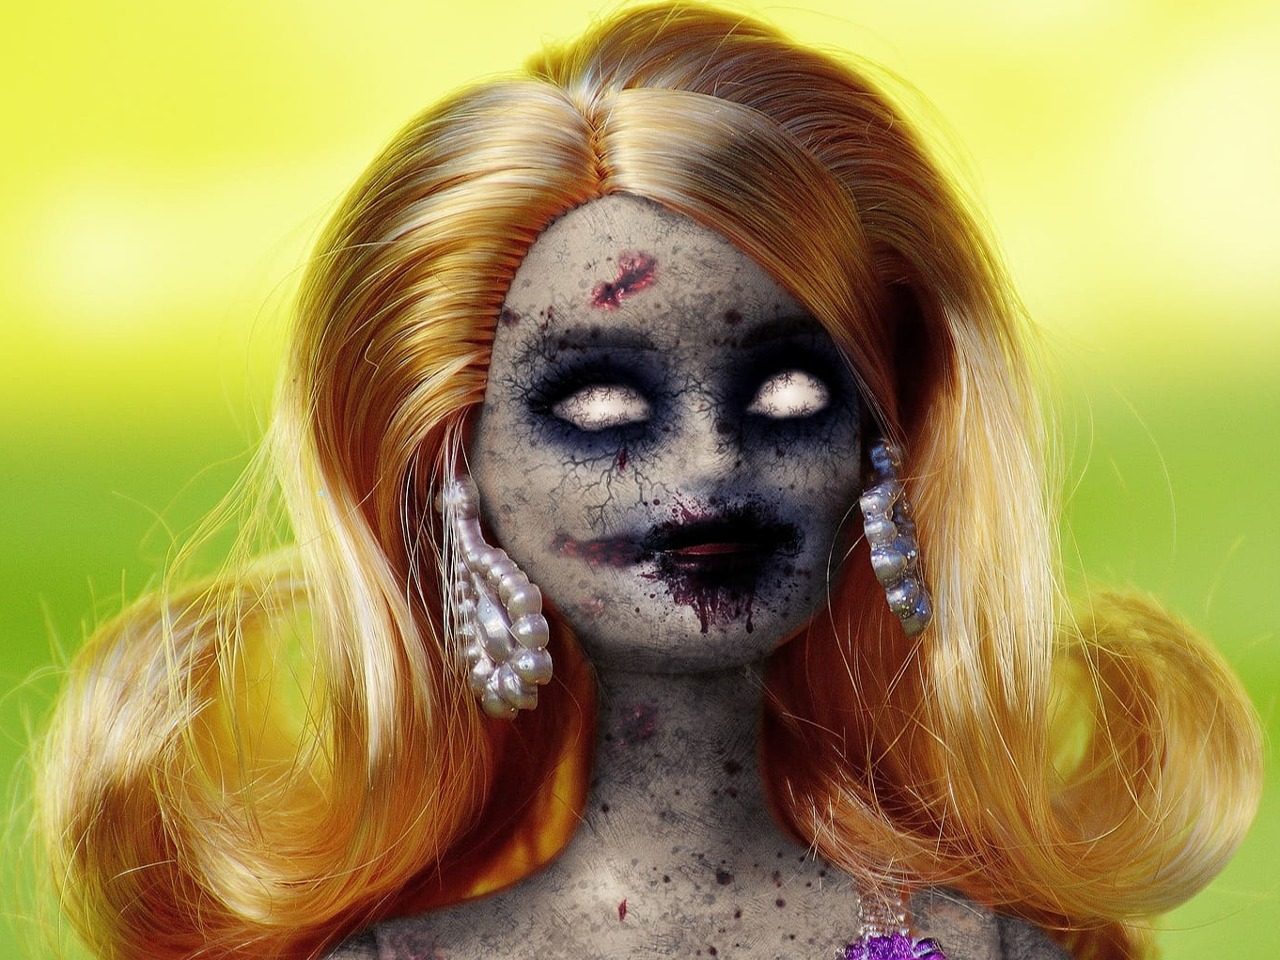 Poupée zombie par Pete Linforth de Pixabay